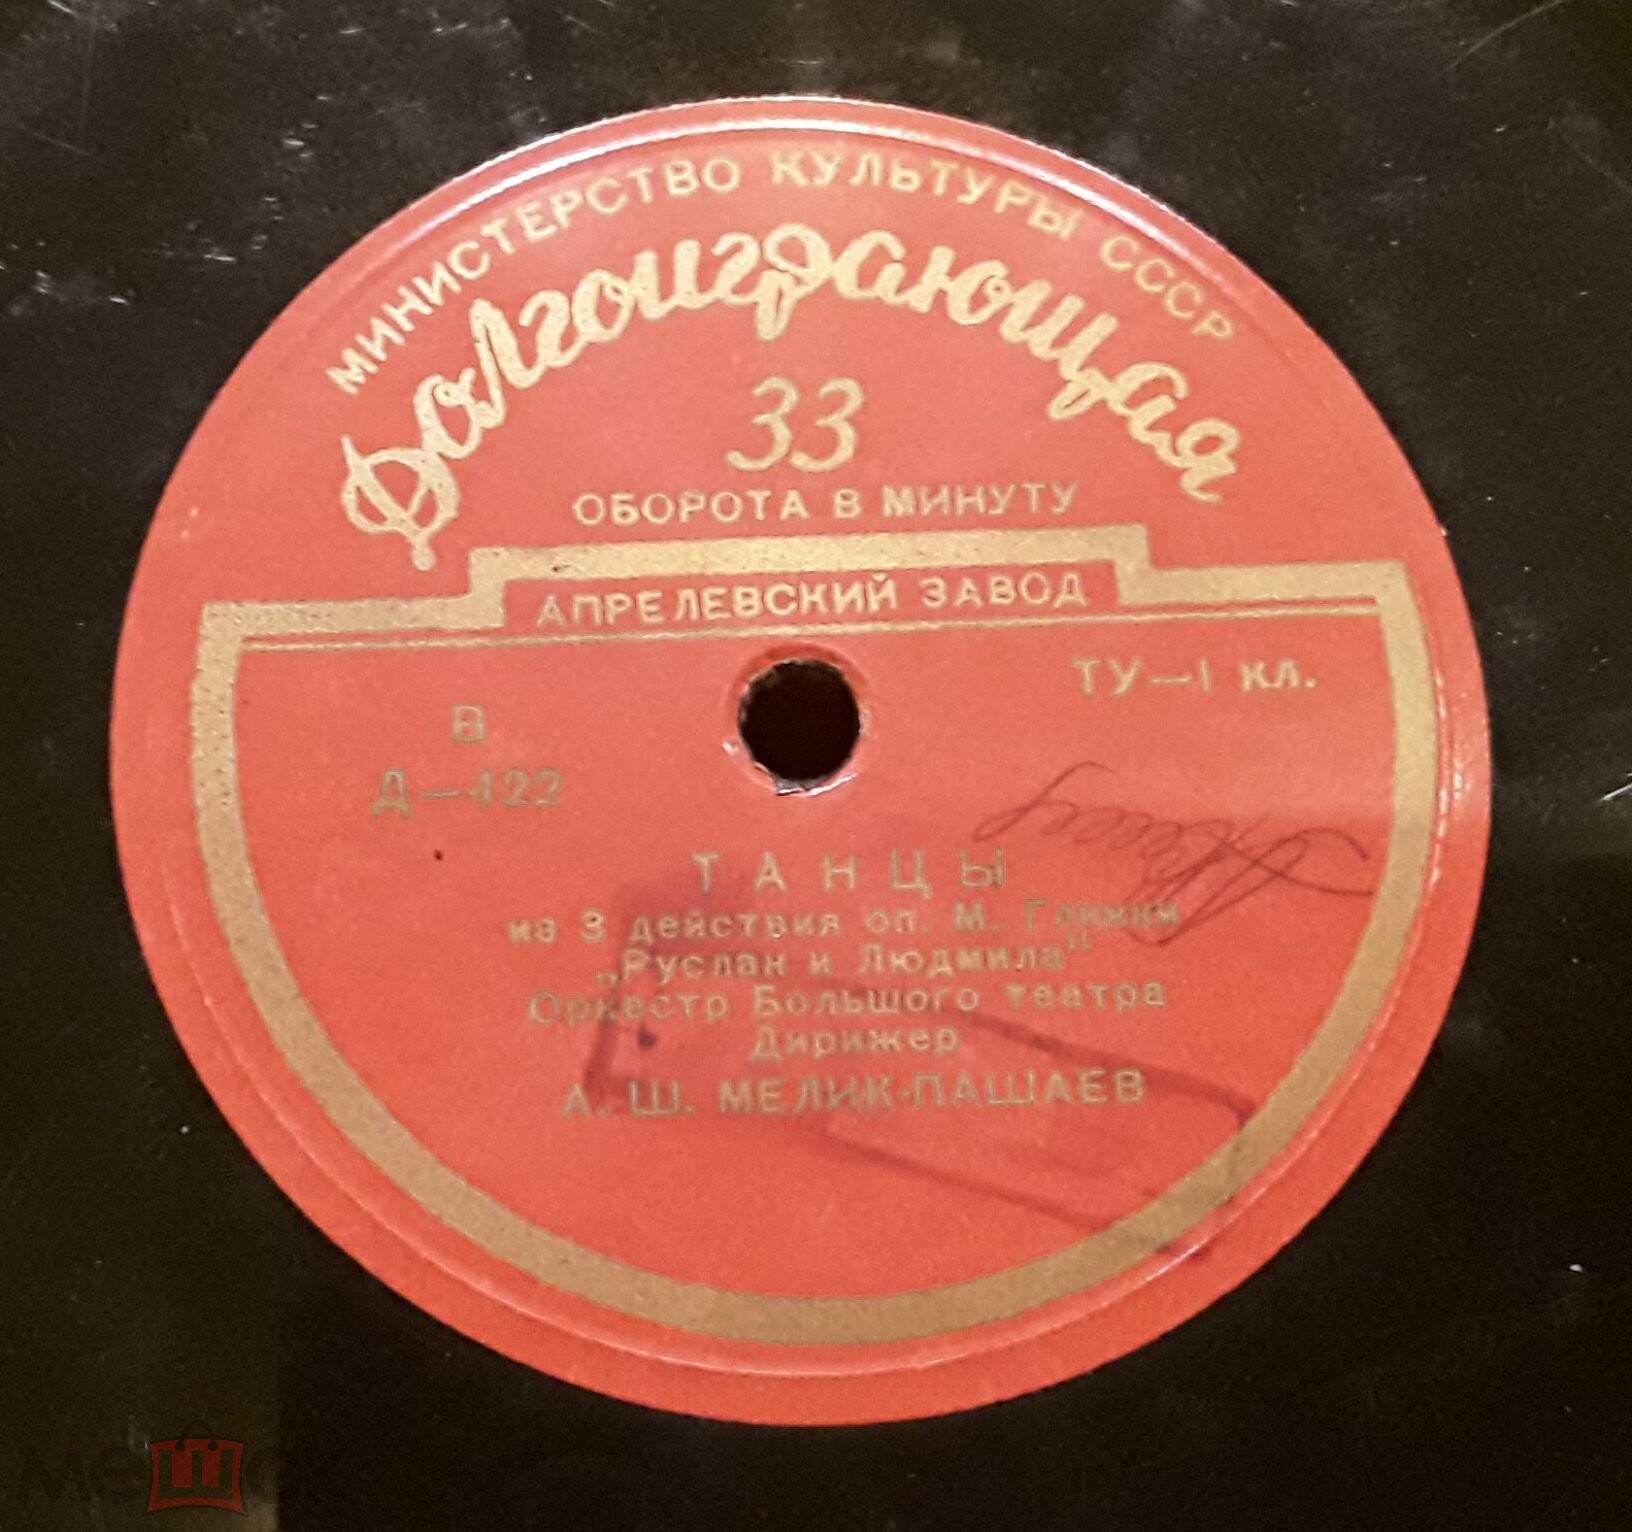 М. ГЛИНКА (1804–1857): Музыка из опер (А. Мелик-Пашаев)